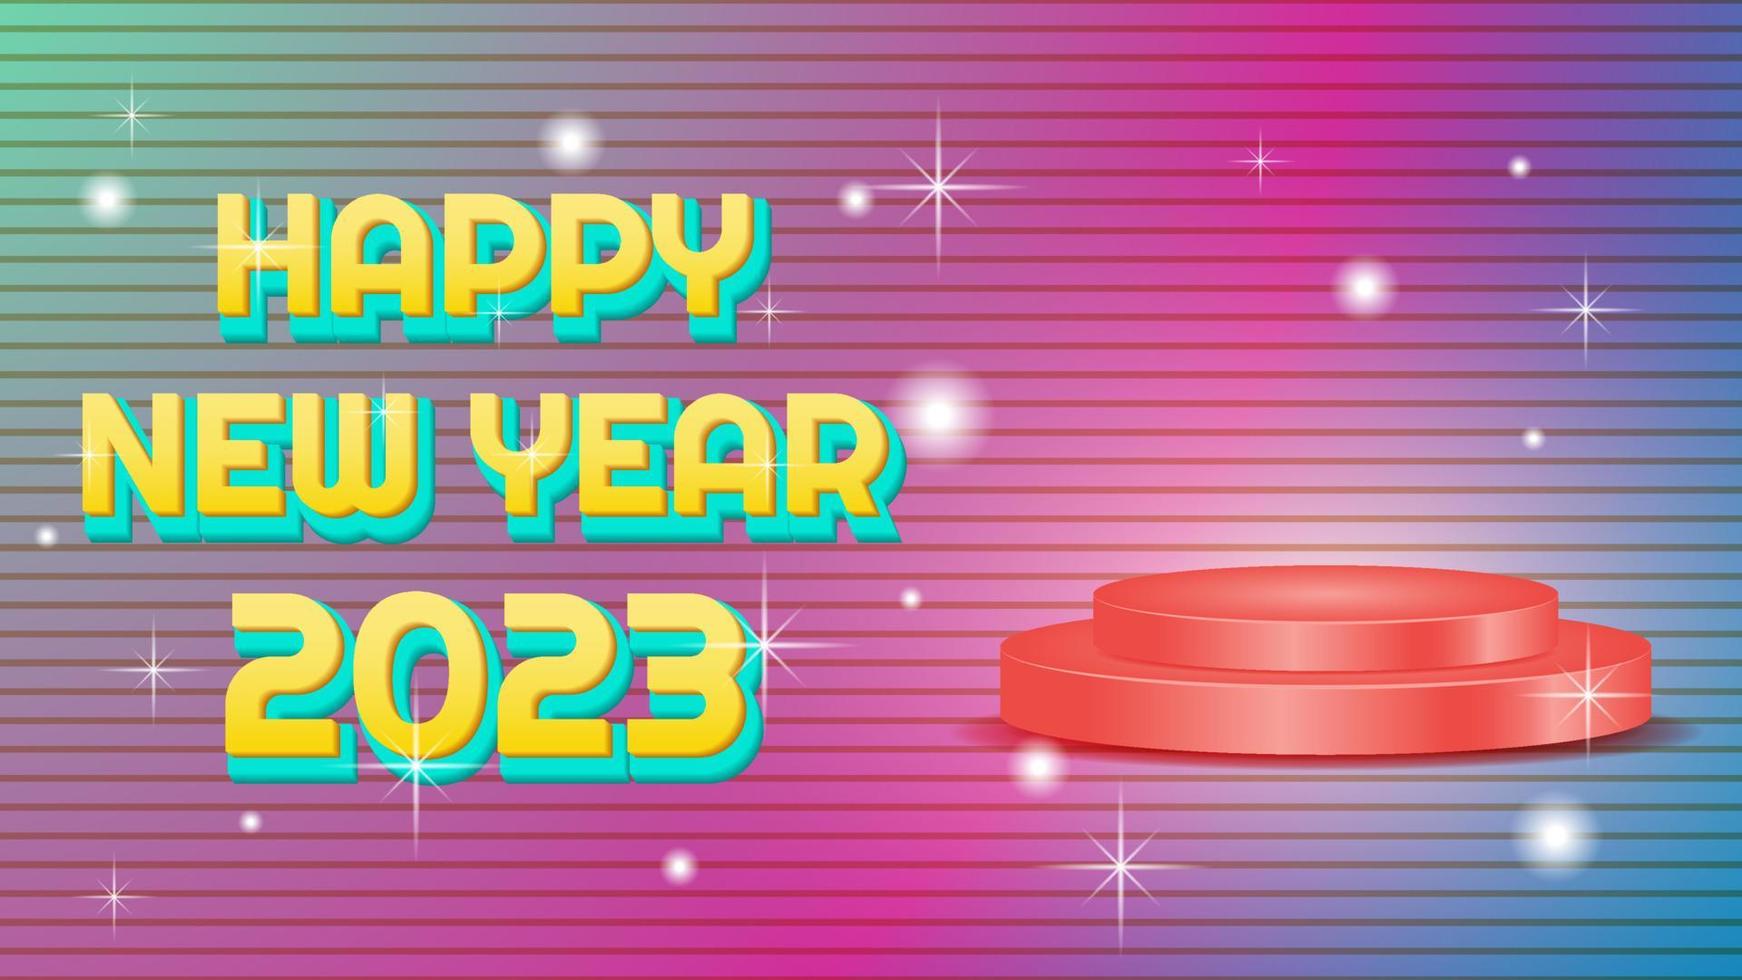 3D-Texteffekt, rotes Podium und farbenfrohes Hintergrunddesign für ein frohes neues Jahr 2023. einfaches und elegantes Konzept. Verwendung für Werbung, Begrüßung und Werbung vektor